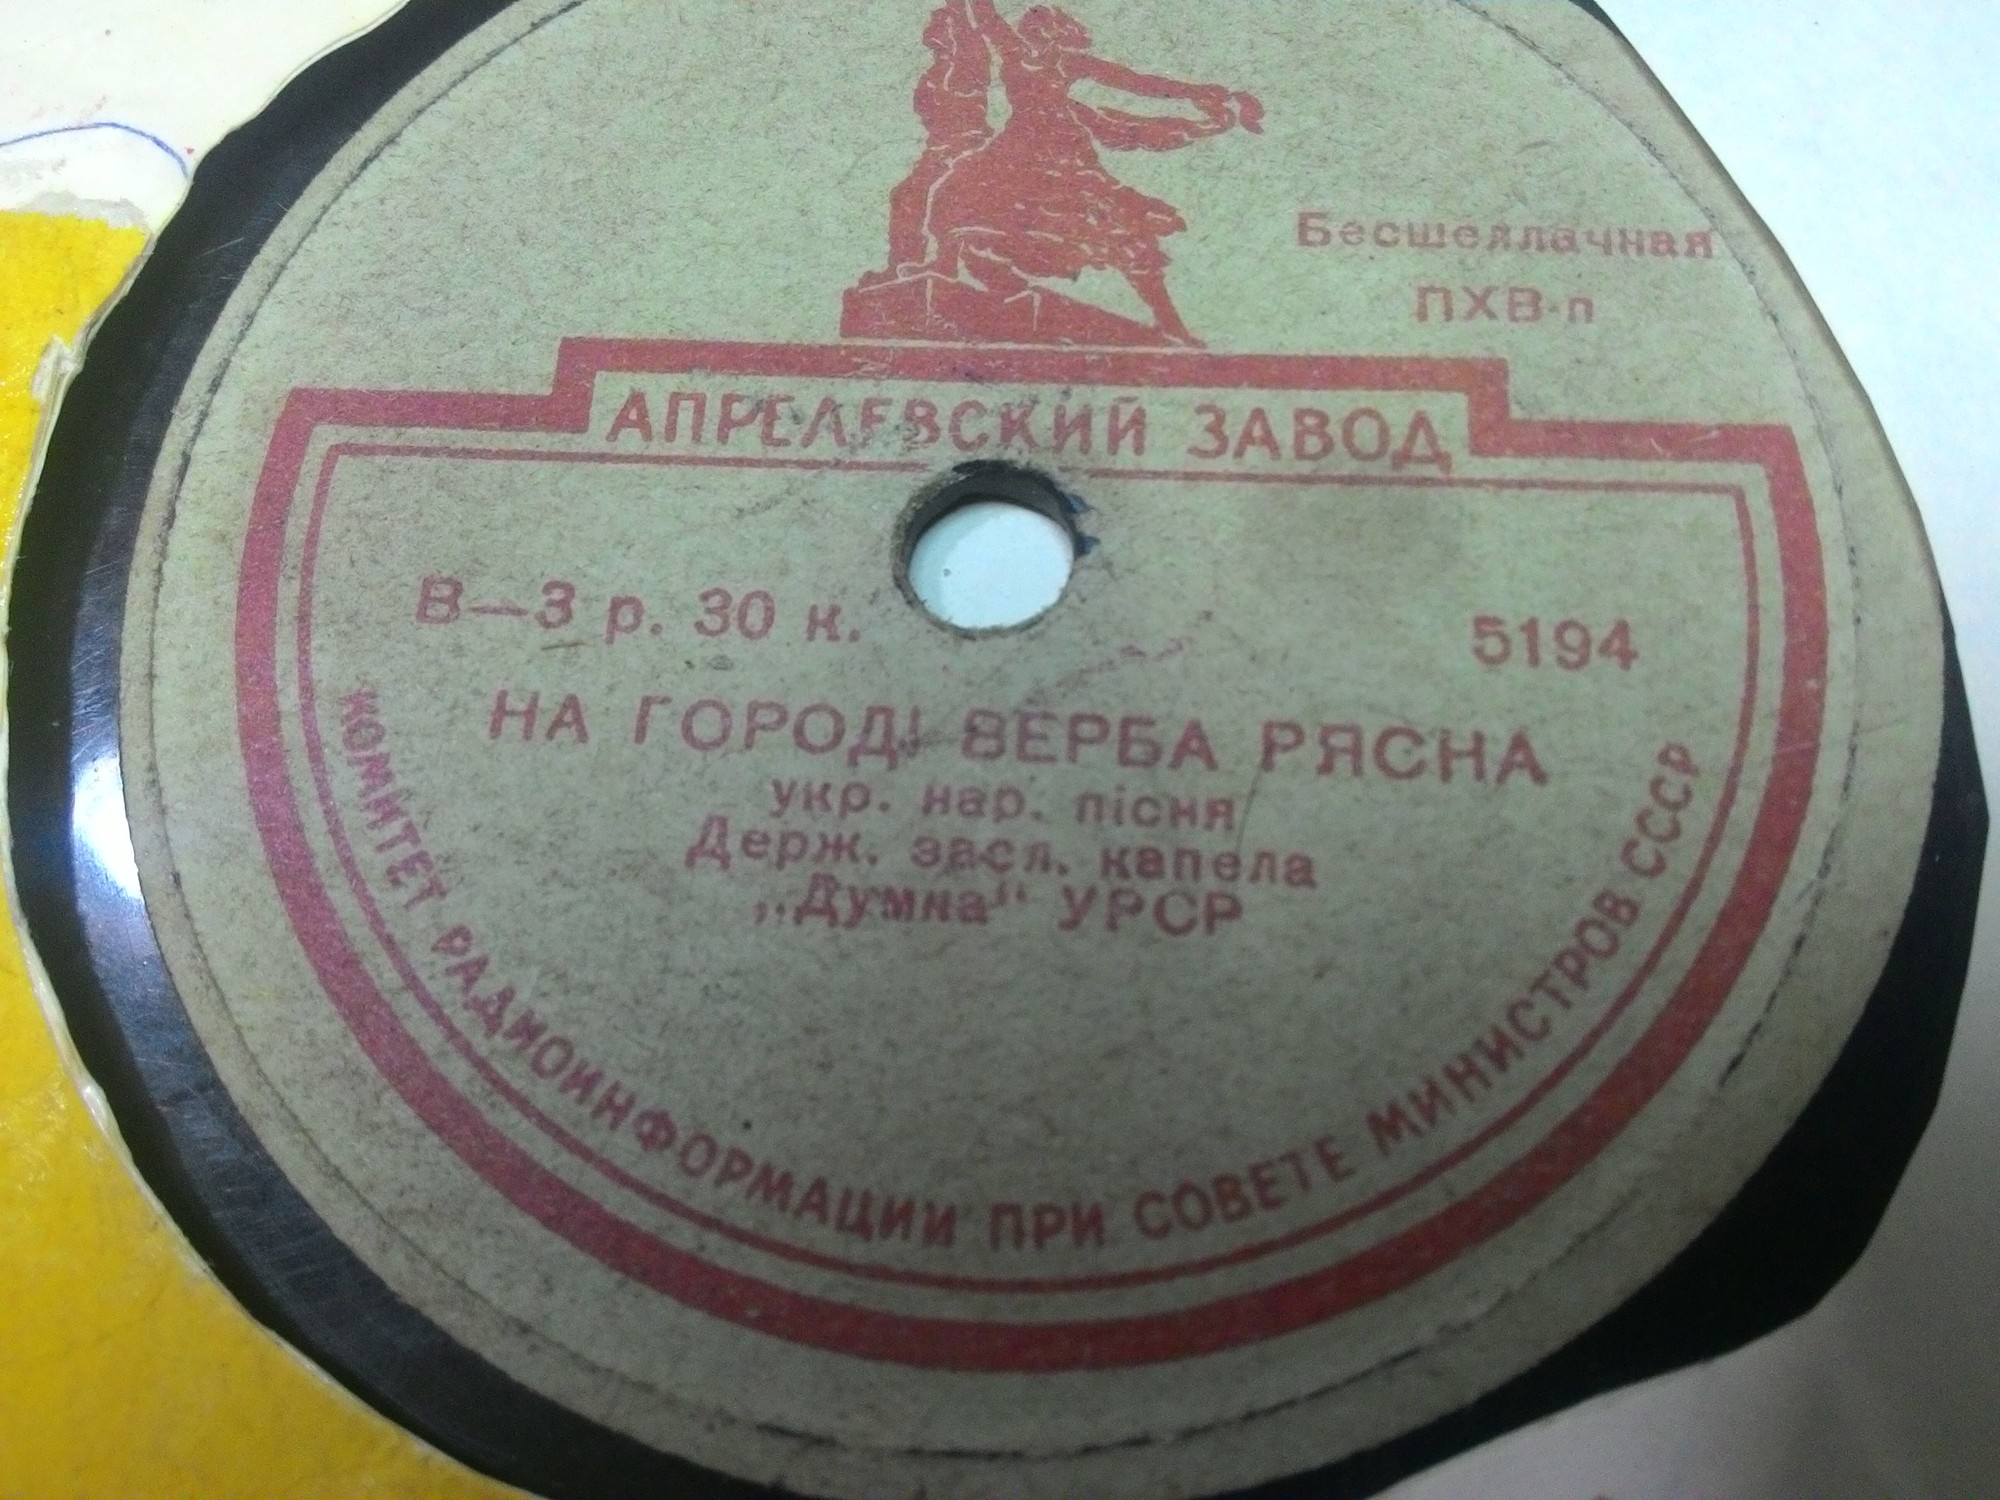 ГОСУДАРСТВЕННАЯ КАПЕЛЛА УССР «ДУМКА» - Украинские народные песни